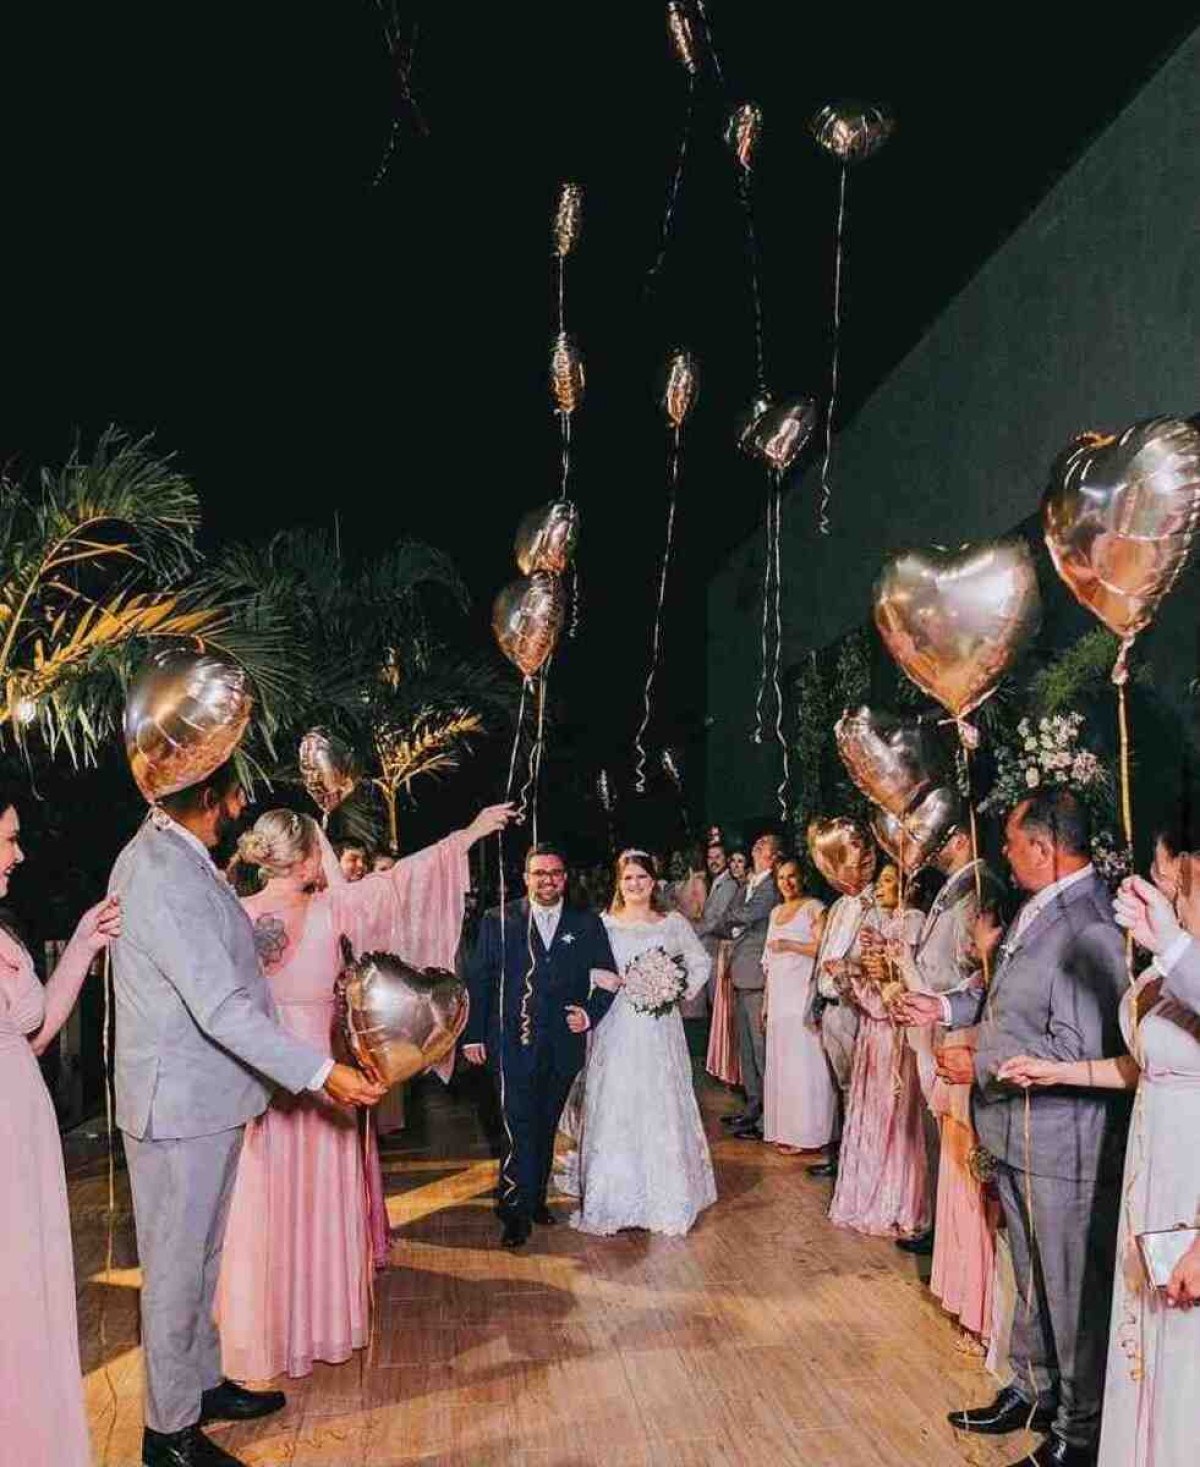 Venerotti Decorações - Todo ano surgem novas tendências de decoração de  casamento porque os noivos estão sempre buscando inovação e originalidade,  algo que faça com que a cerimônia seja memorável. 2022 não